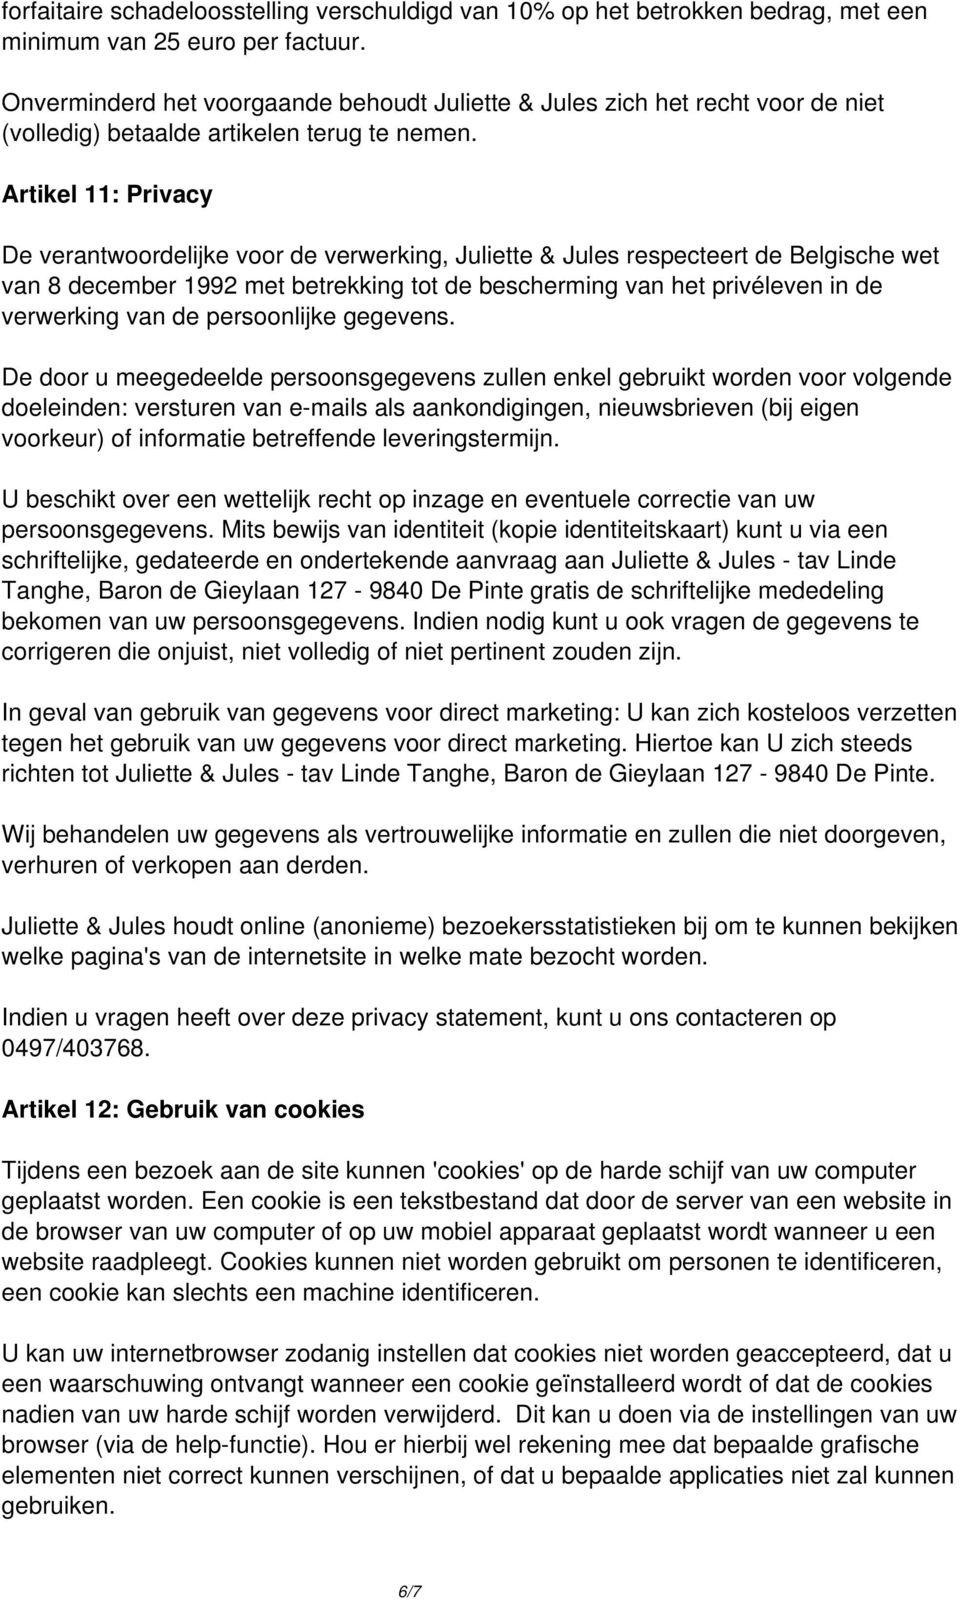 Artikel 11: Privacy De verantwoordelijke voor de verwerking, Juliette & Jules respecteert de Belgische wet van 8 december 1992 met betrekking tot de bescherming van het privéleven in de verwerking